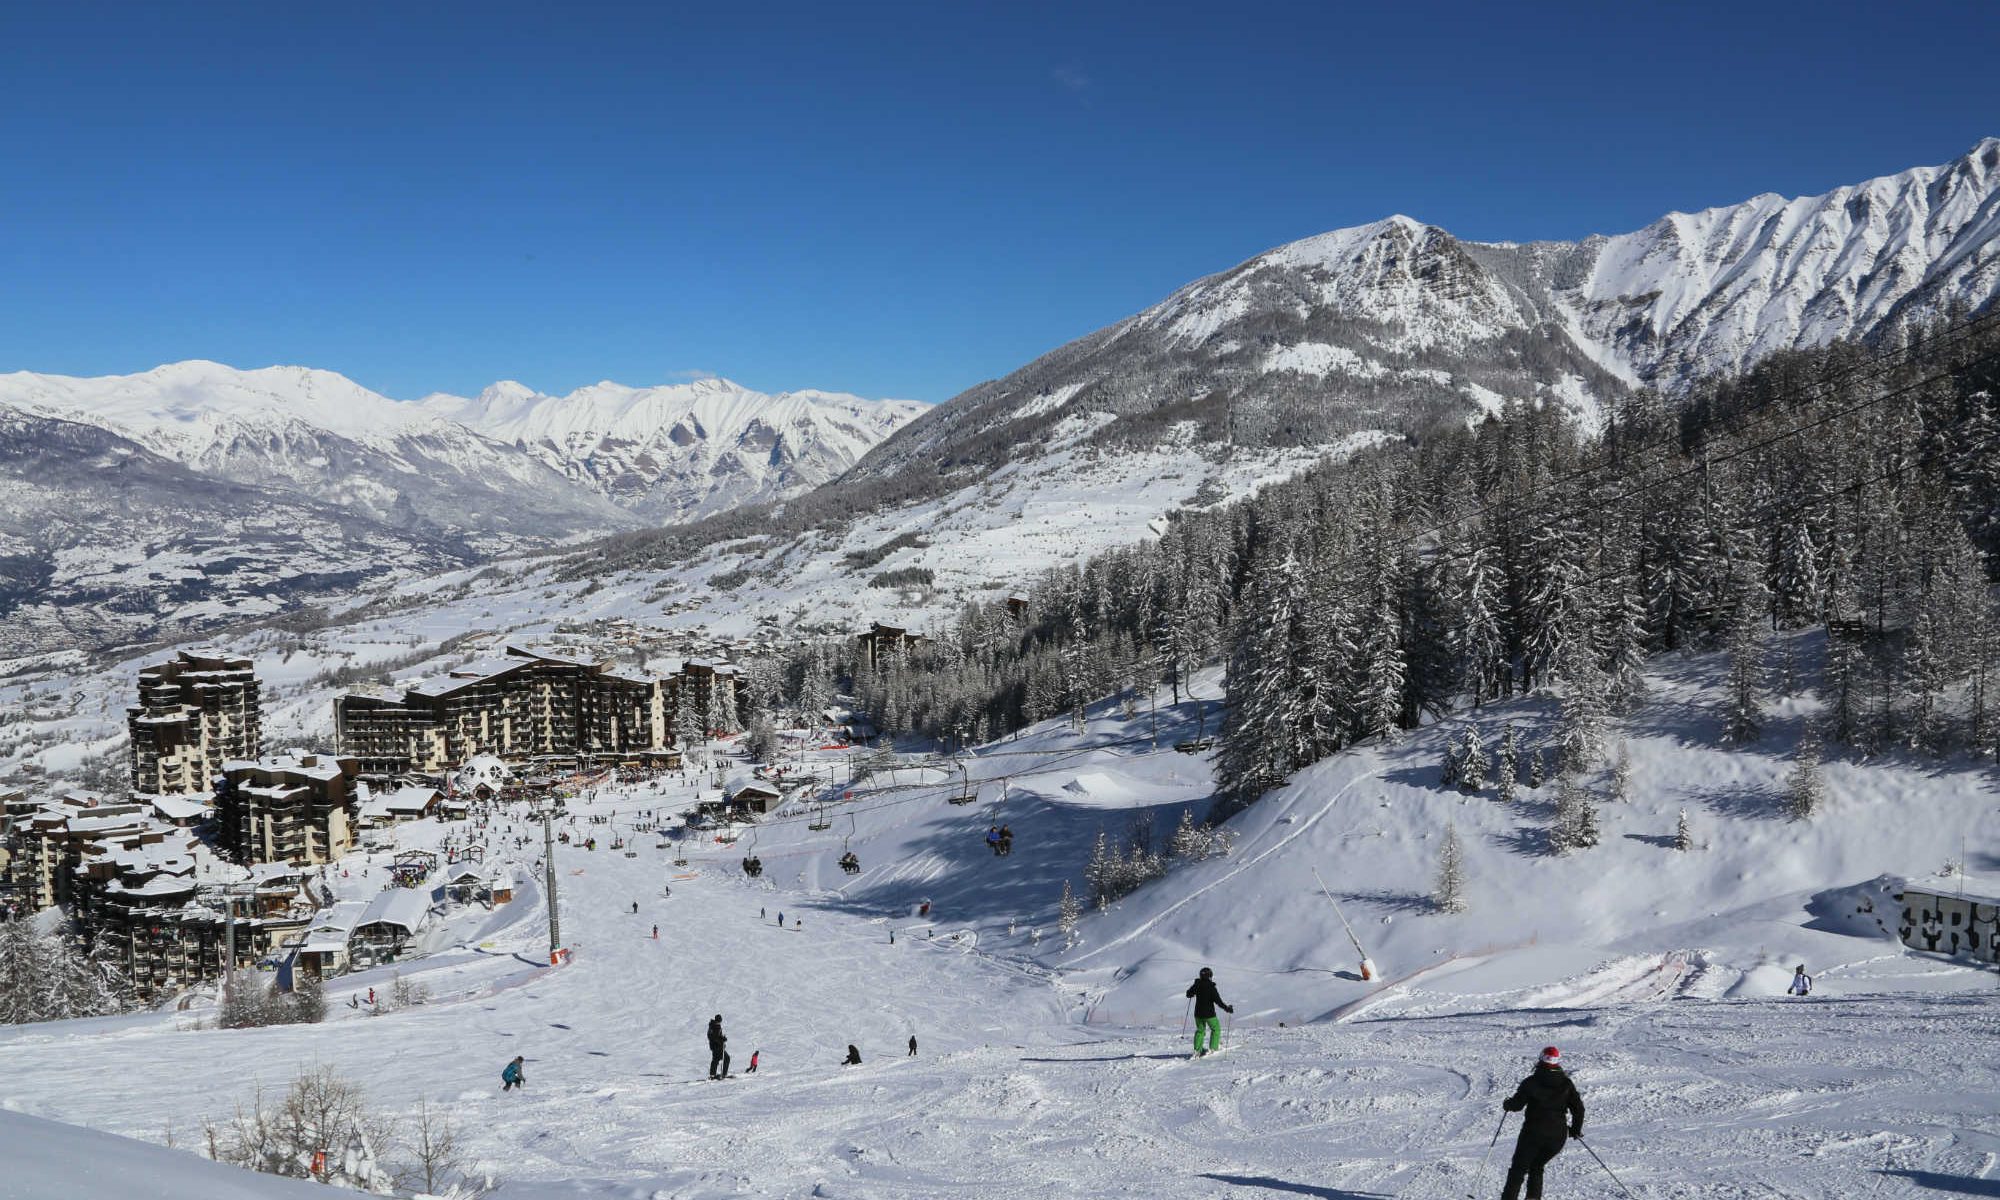 Des skieurs descendent une piste de ski en direction du village Les Orres 1650 sous un grand ciel bleu.